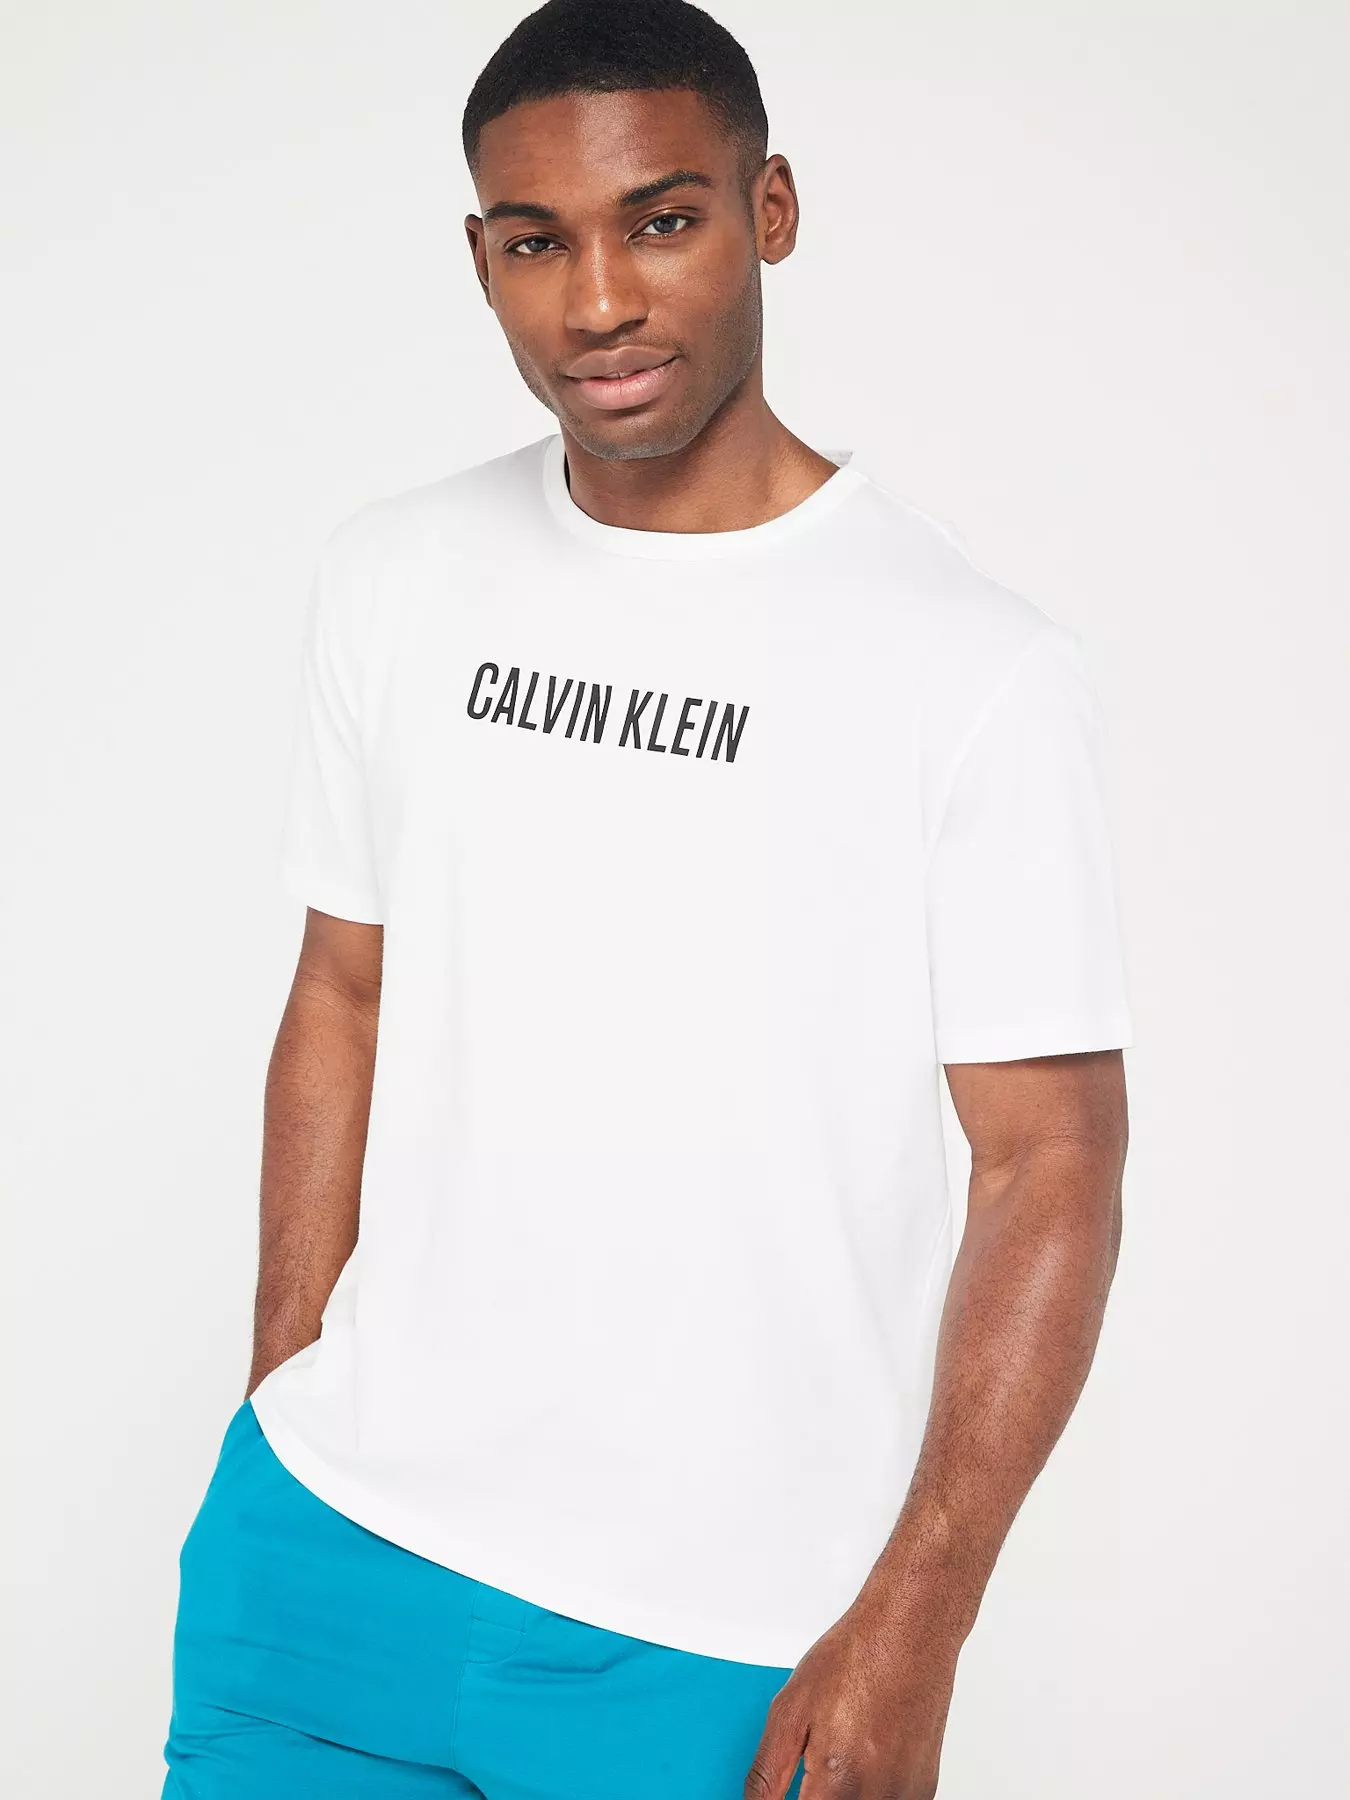 Calvin klein, T-shirts & polos, Men